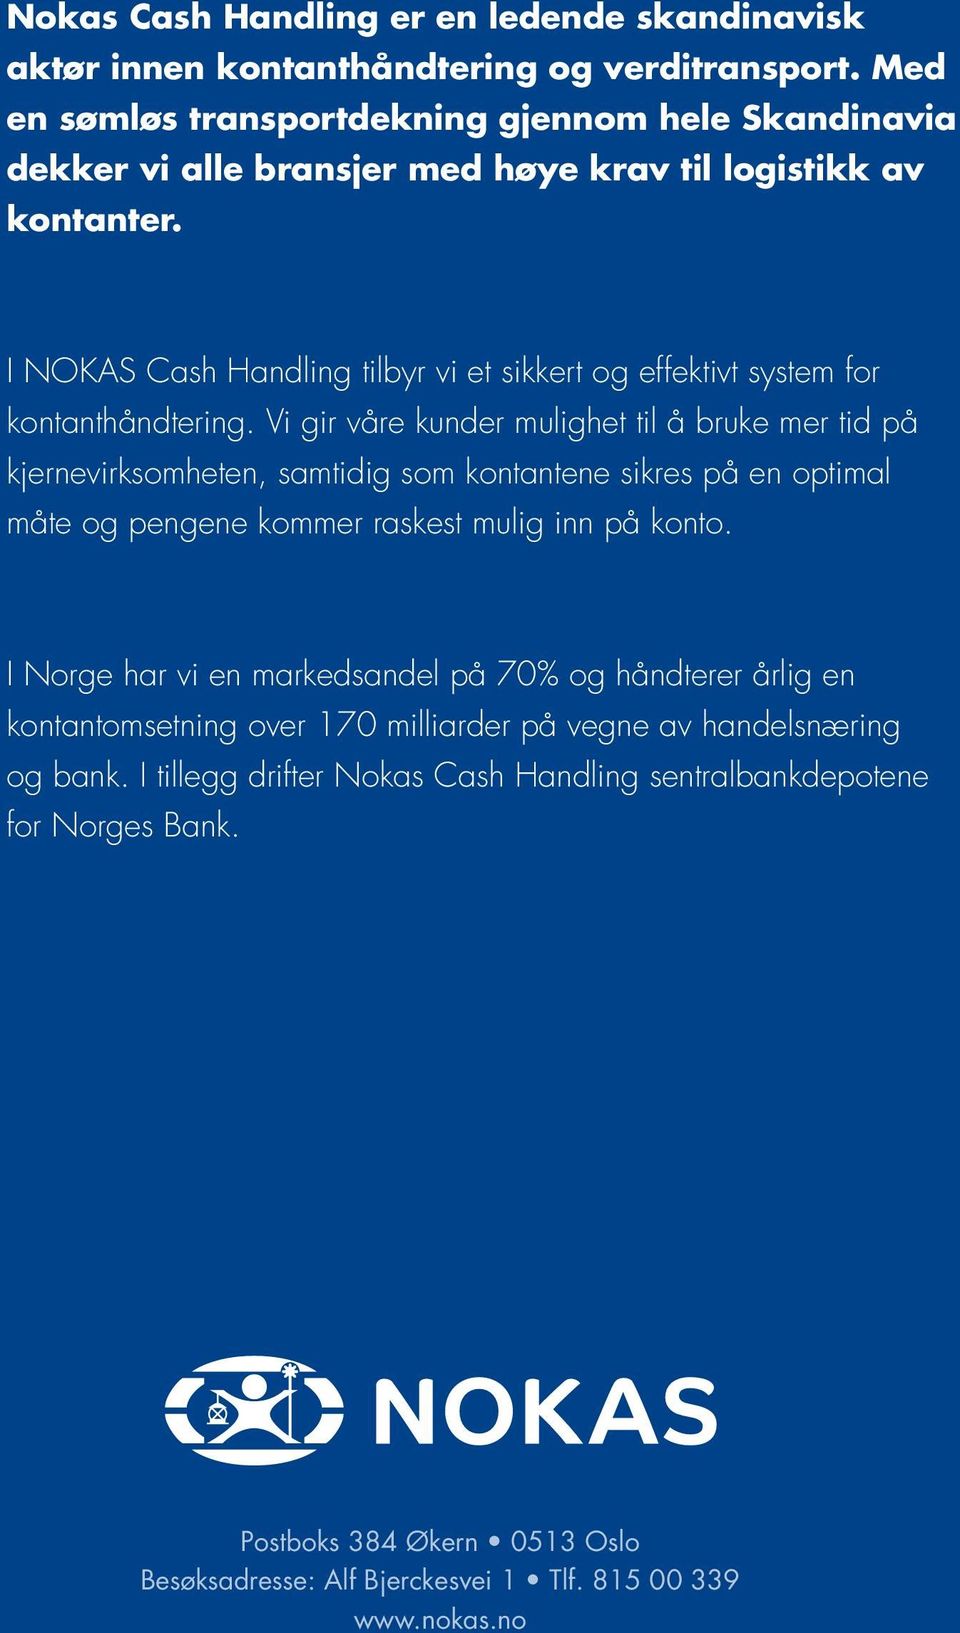 I NOKAS Cash Handling tilbyr vi et sikkert og effektivt system for kontanthåndtering.